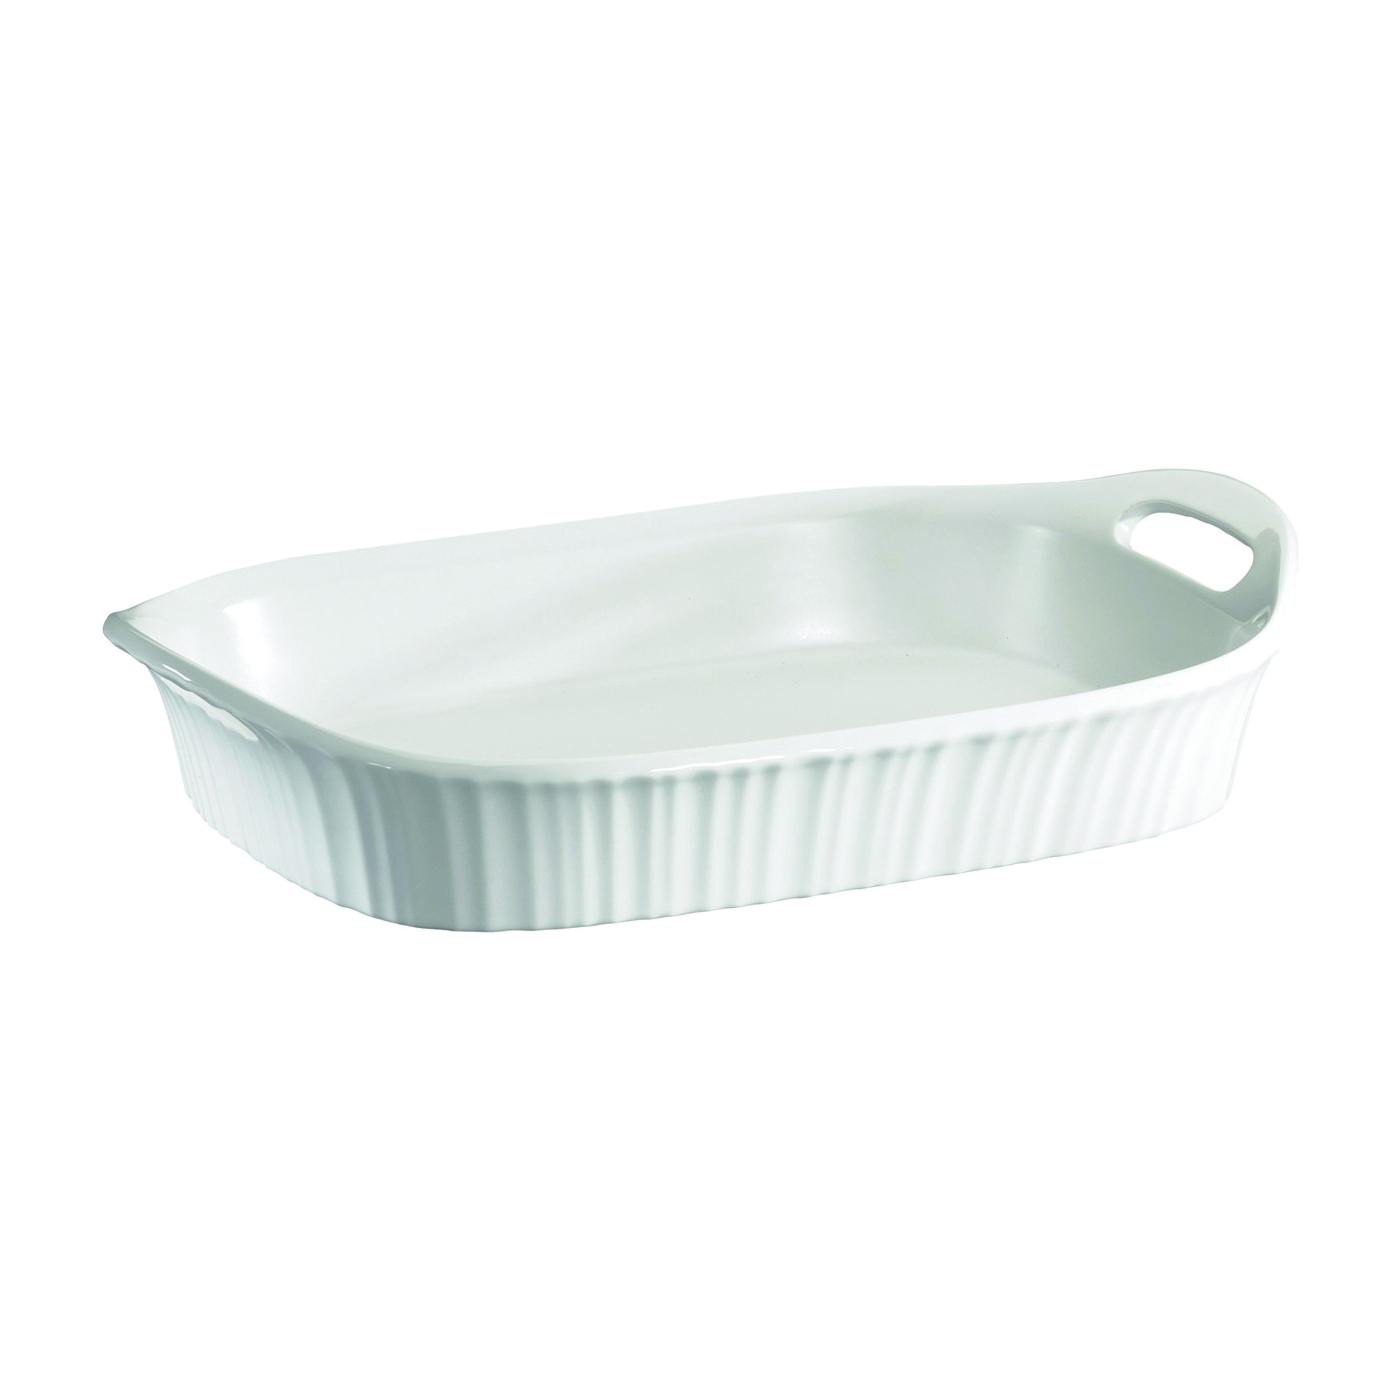 1105936 Casserole Dish, 3 qt Capacity, Ceramic, French White, Dishwasher Safe: Yes